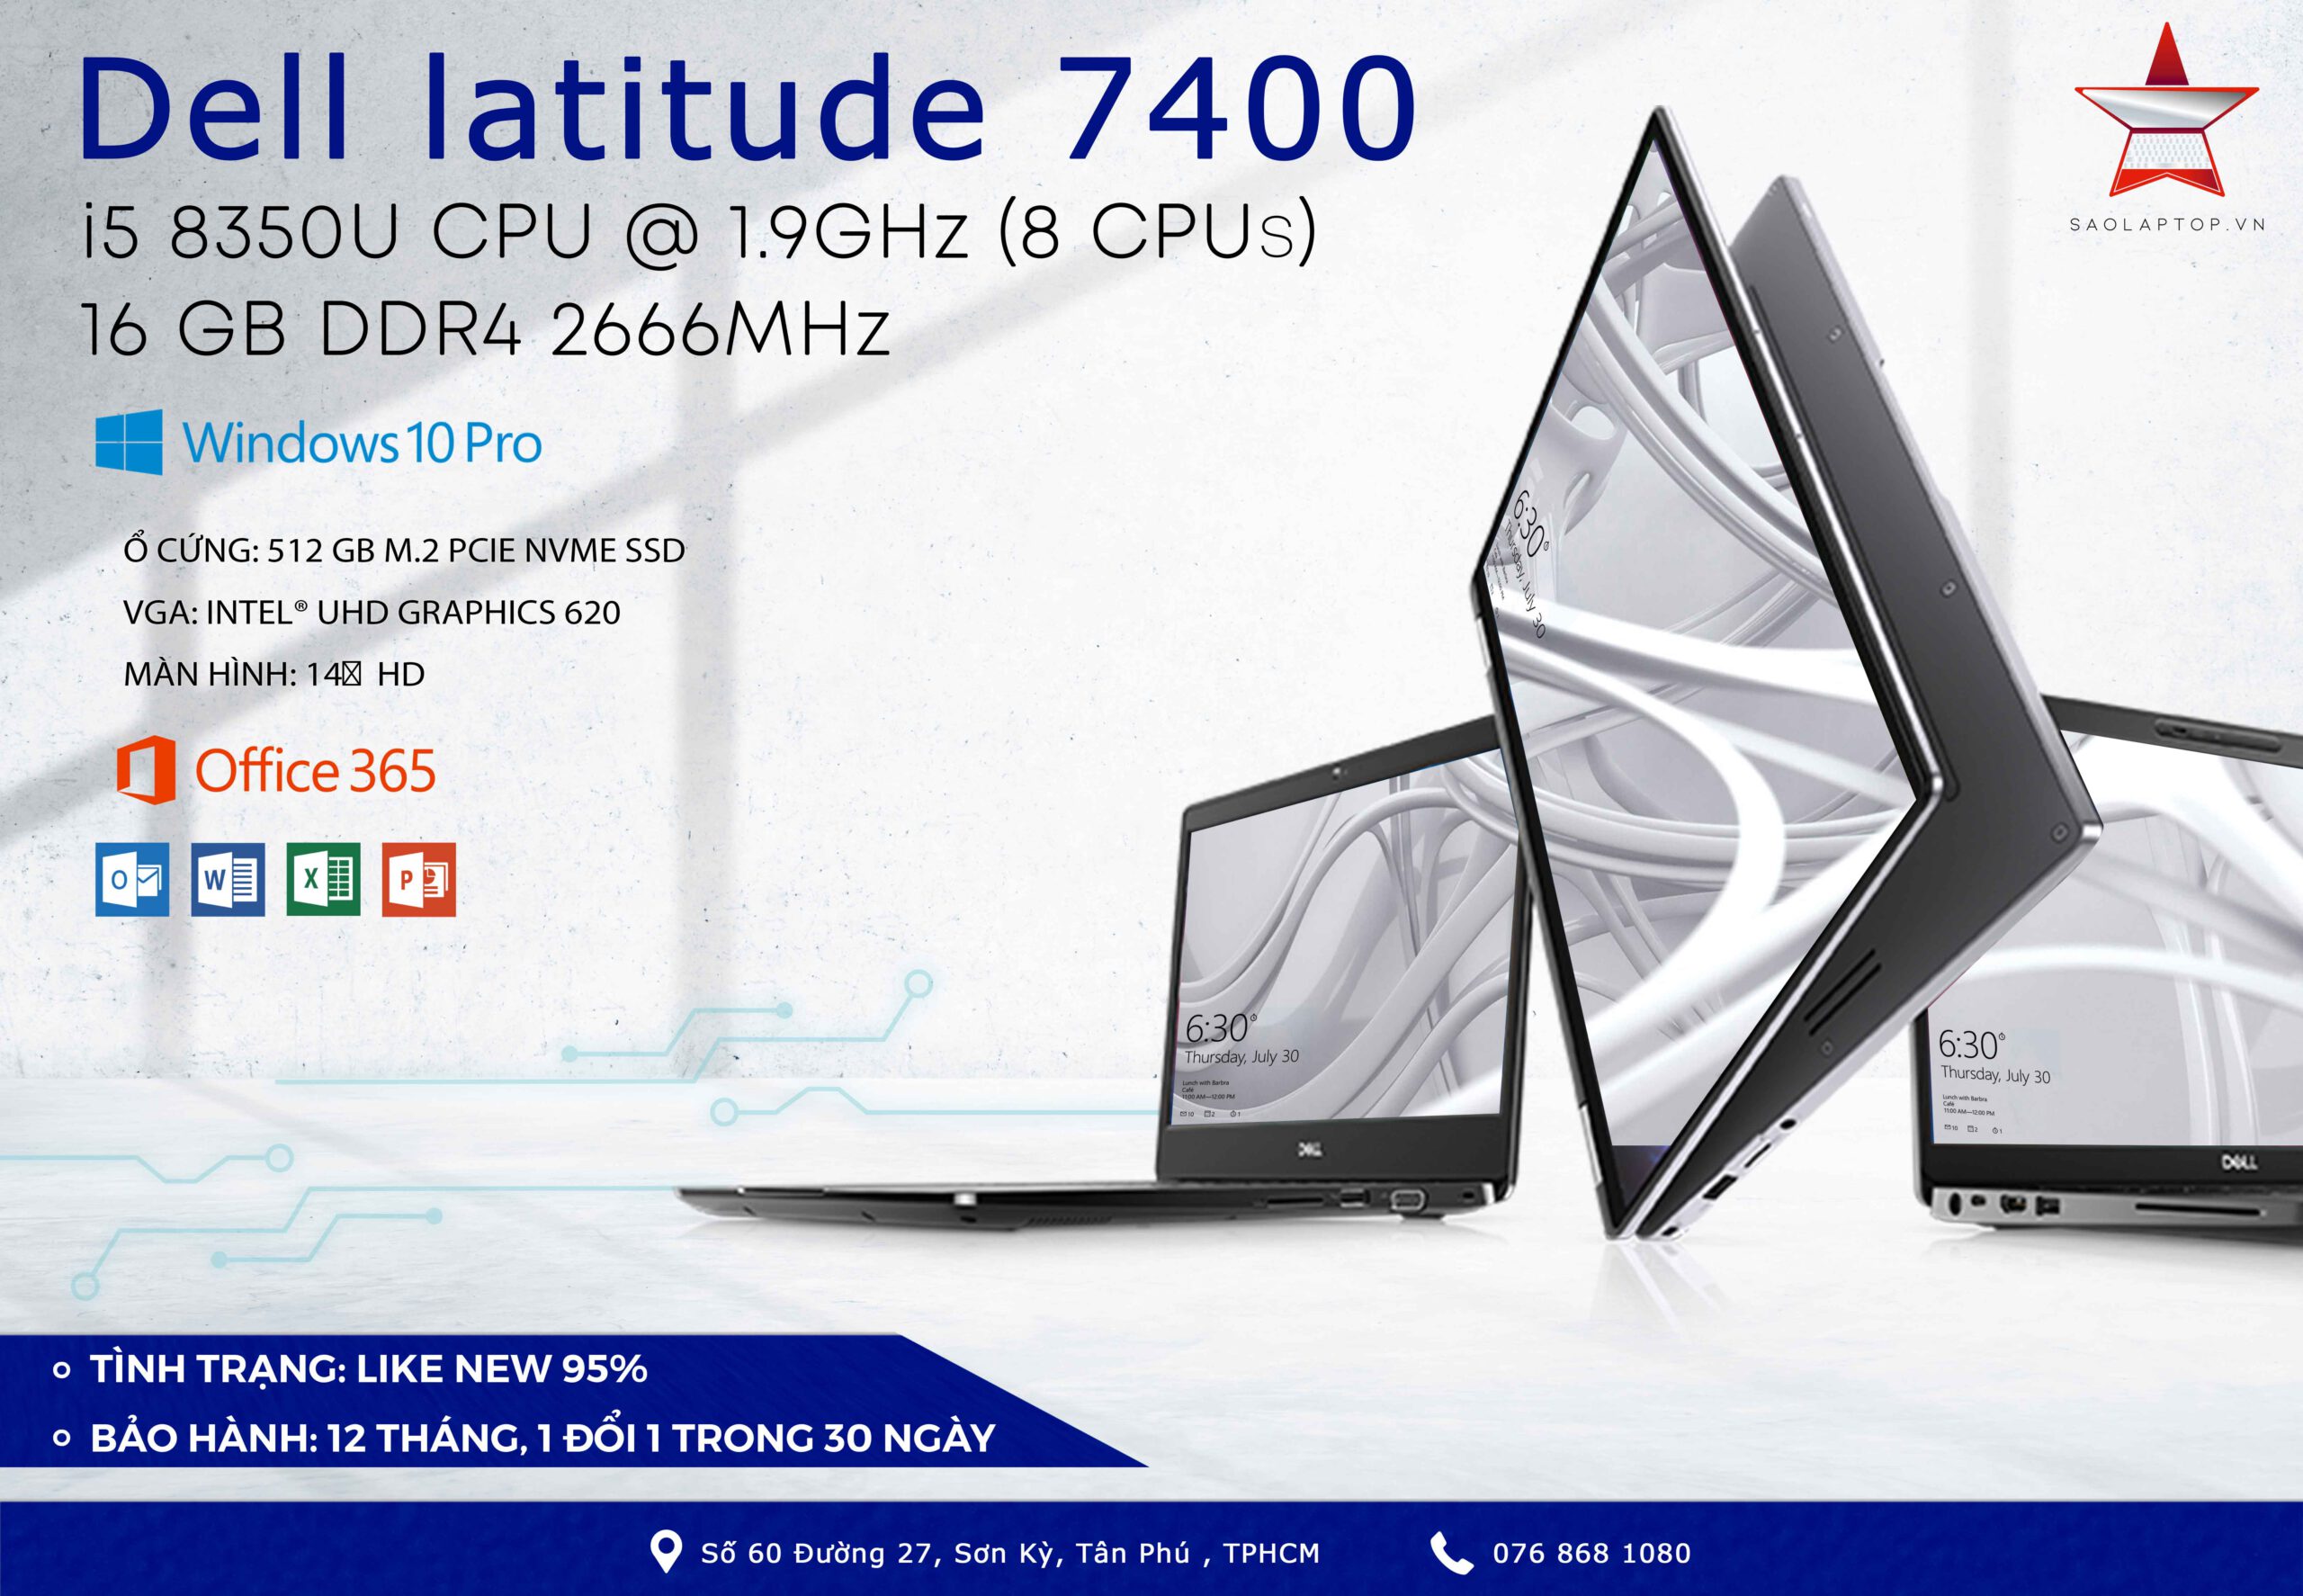 Dell Latitude 7400 củ giá rẻ